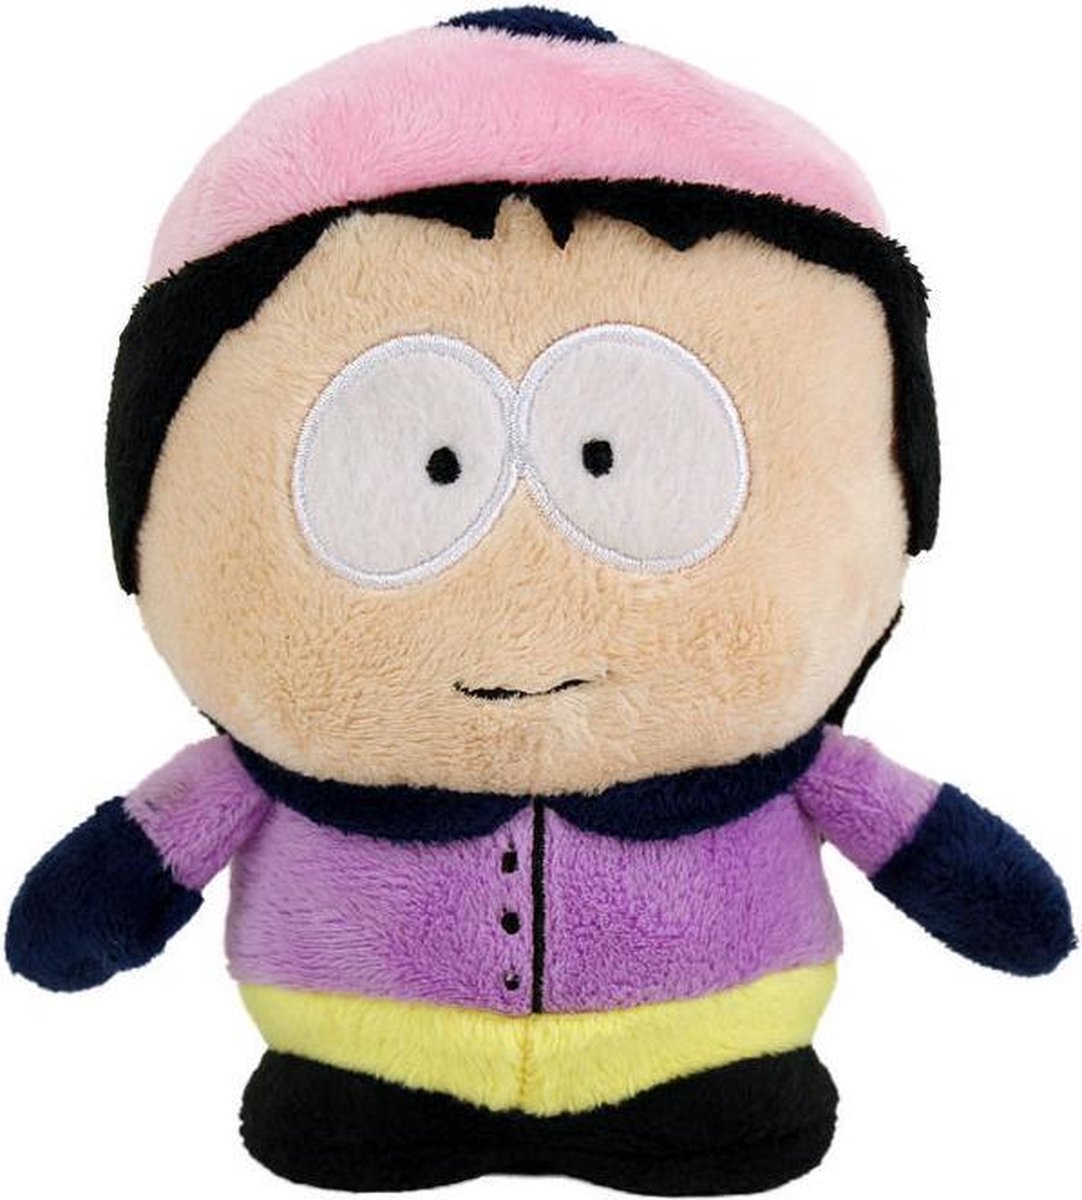 South Park pluche knuffel Wendy Testaburger 36cm | bol.com